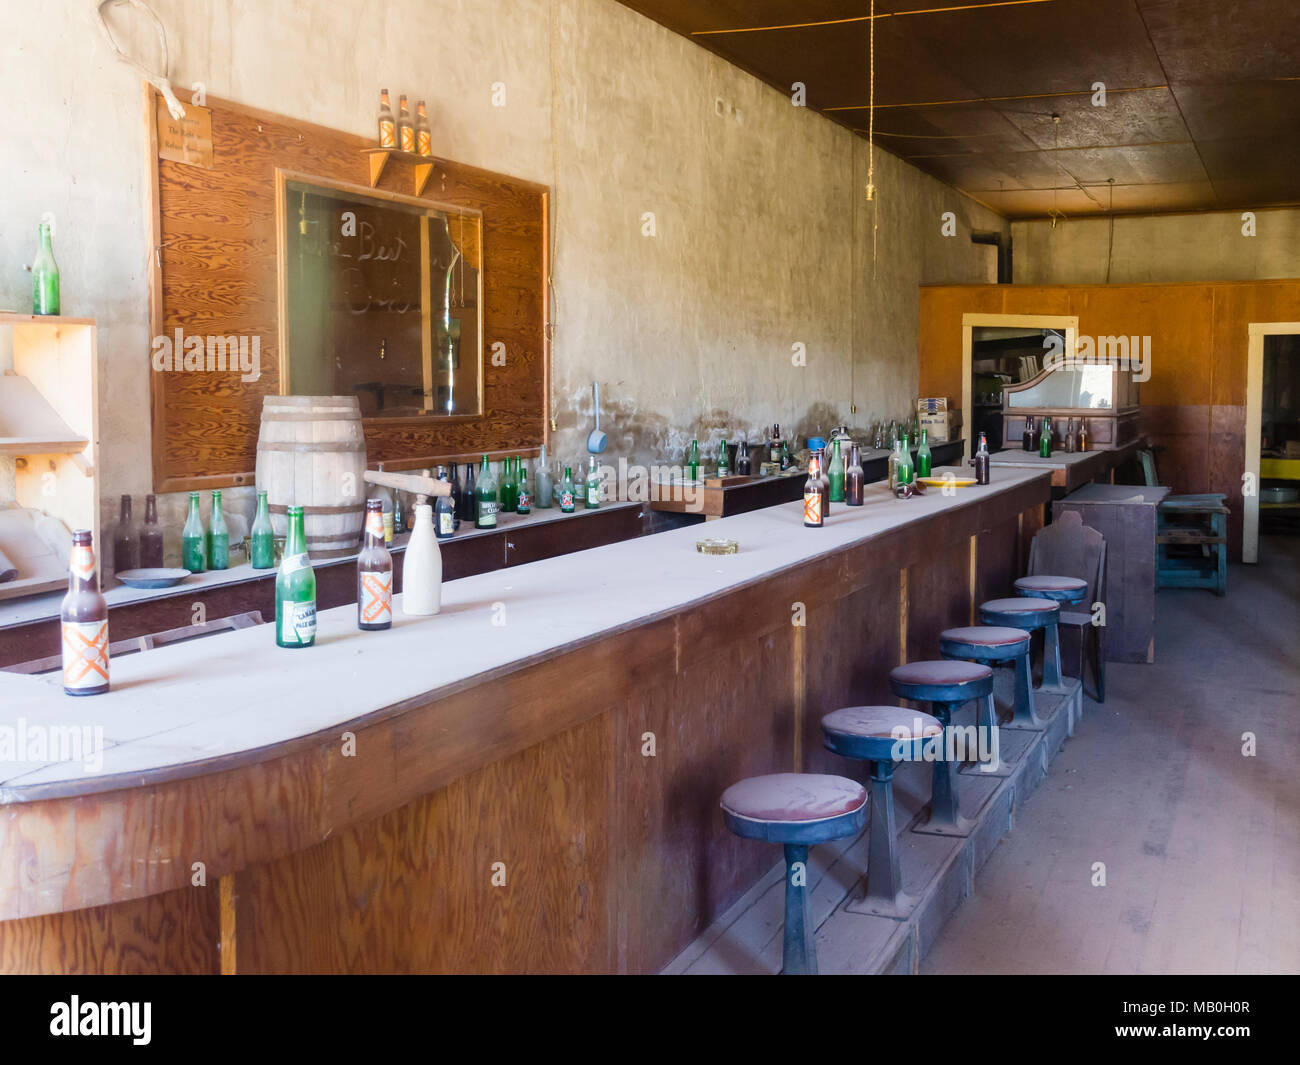 Werfen Sie einen Blick in das verlassene, öde Salon von Bodie am Bodie State Historic Park, einem ehemaligen Wilden Westen Goldrausch Boomtown, jetzt eine Geisterstadt. Stockfoto